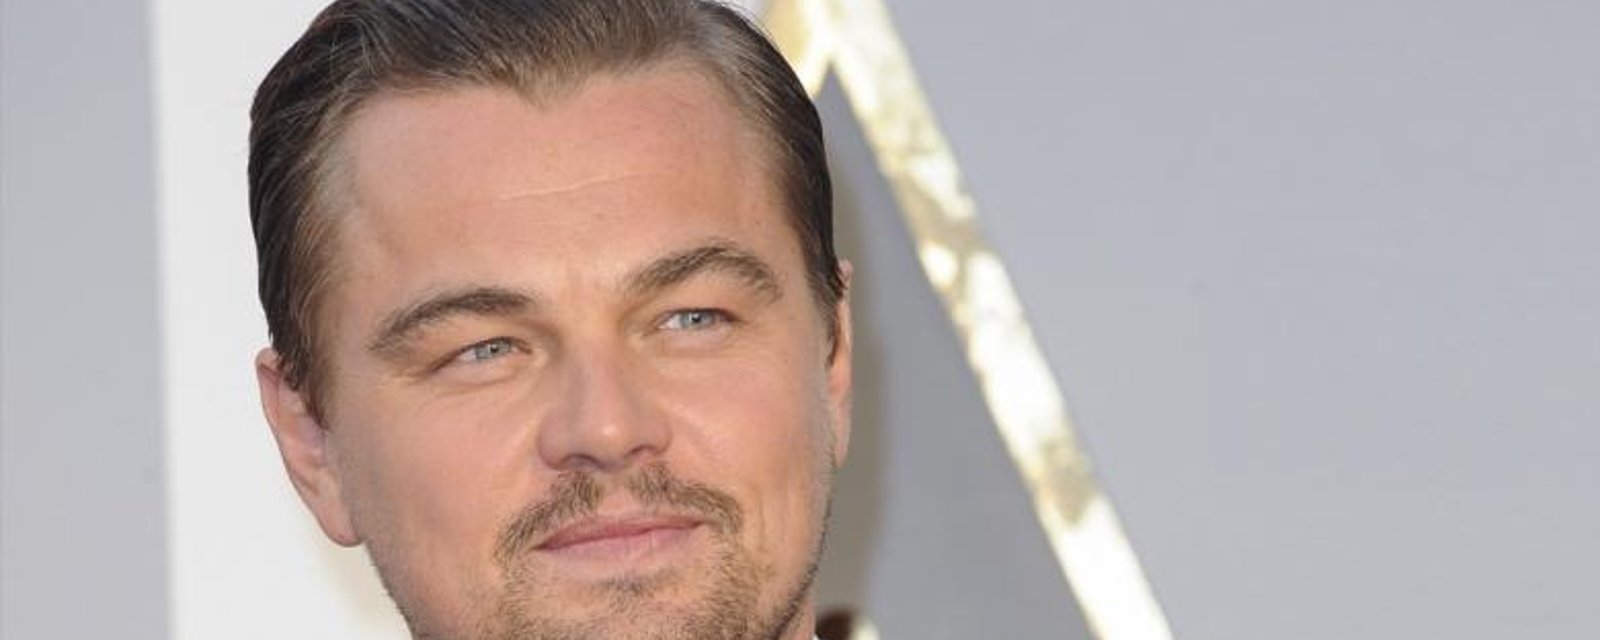 Avec combien de femmes Leonardo DiCaprio a-t-il couché? Vous ferez le saut...